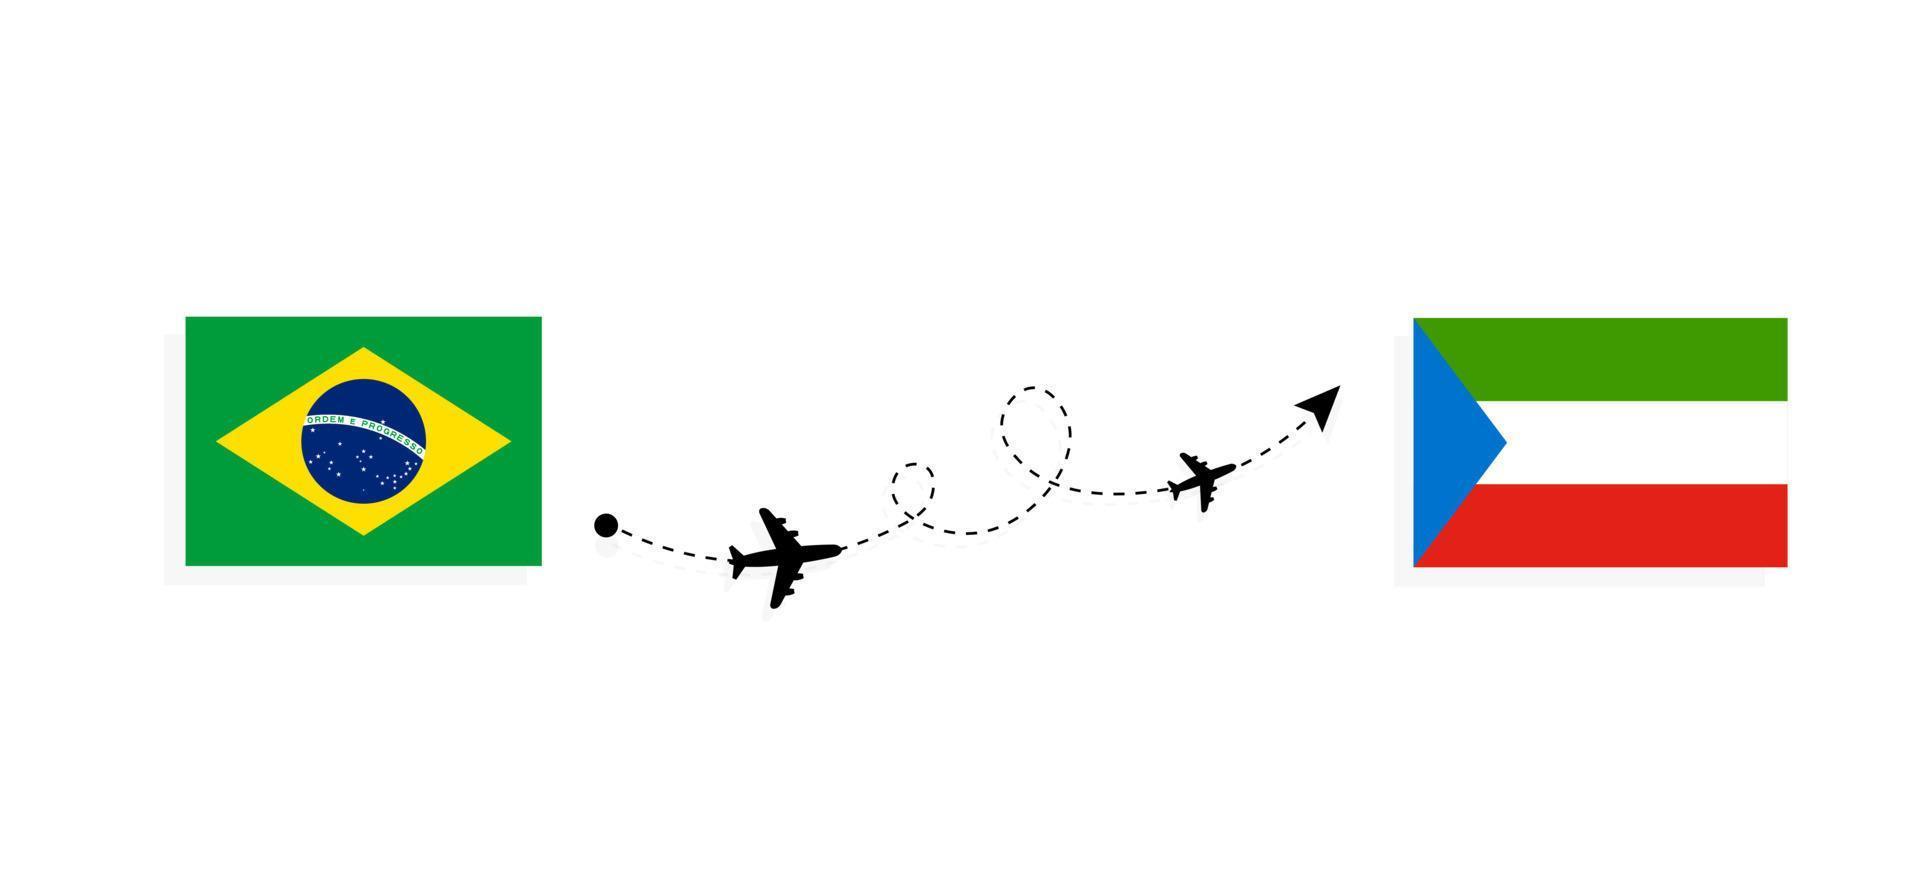 flyg och resor från Brasilien till Ekvatorialguinea med passagerarflygplan vektor